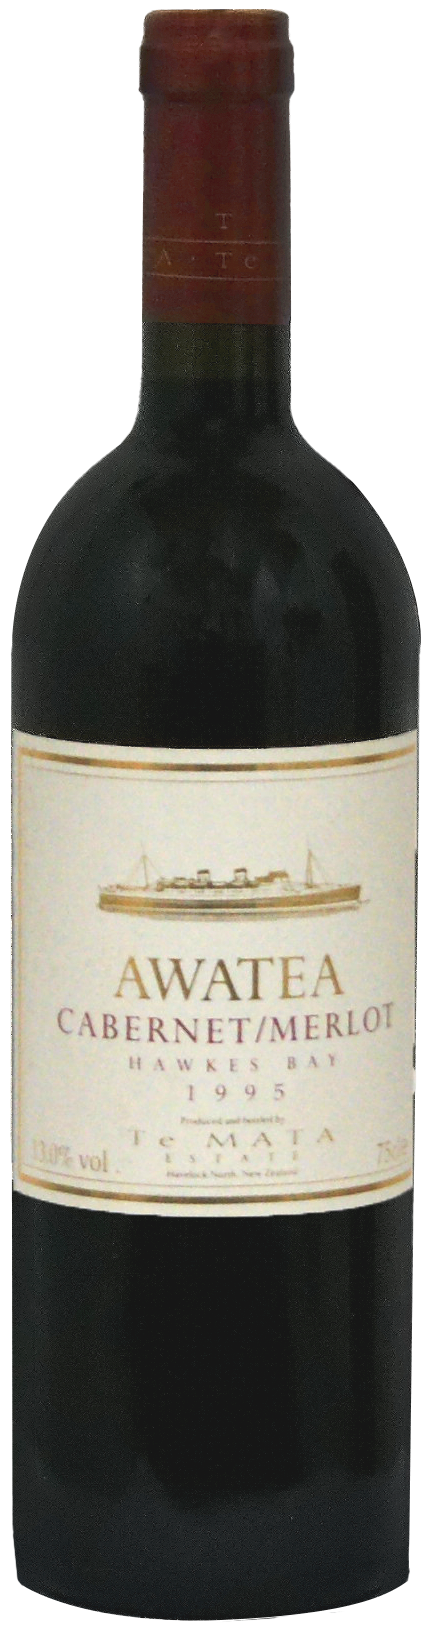 Awatea-95